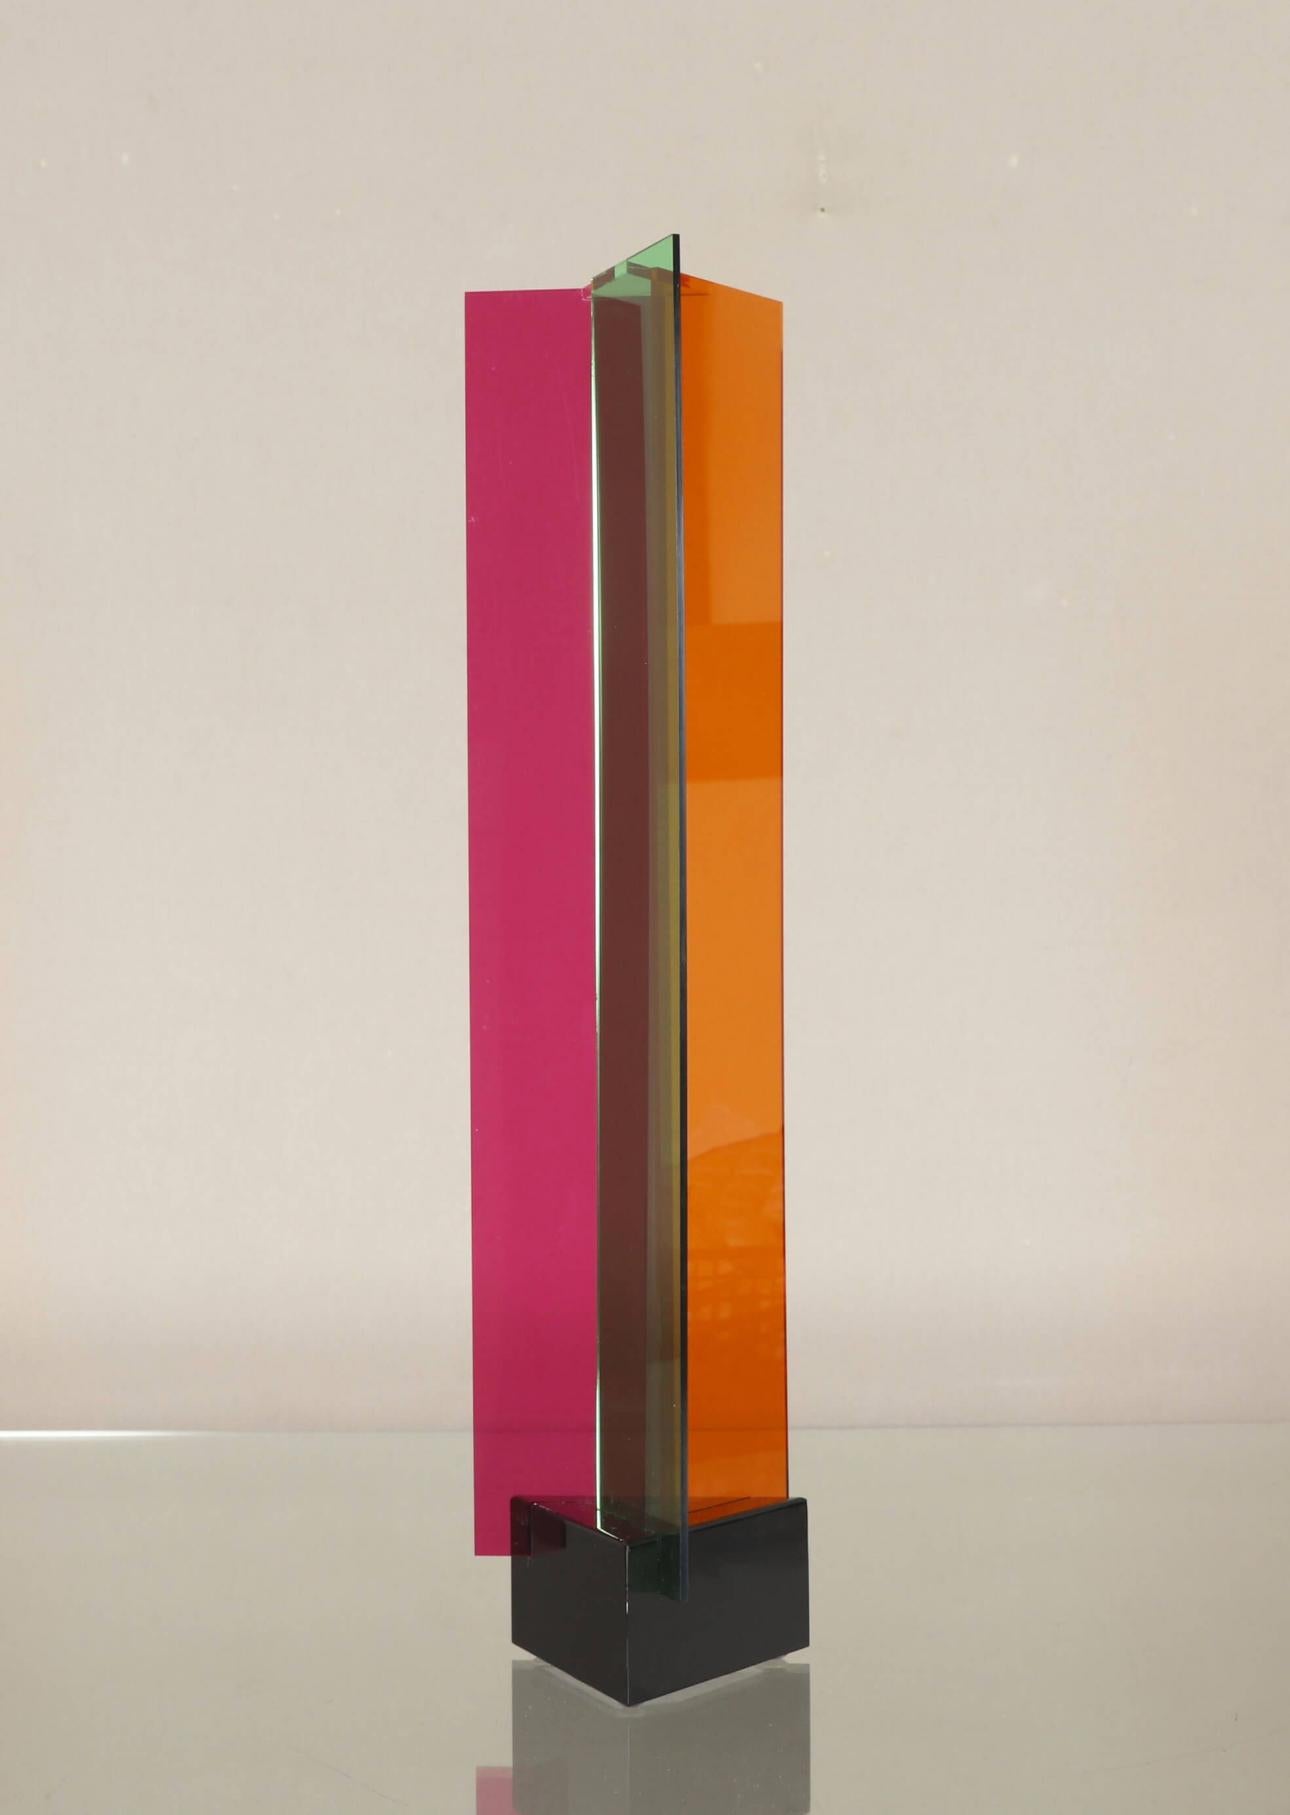 Carlos Cruz Diez
Dreifach-Transchrom 2011
Plexiglas-Skulptur
Editions La Difference Paris 49 von 75
21 x 5 x 5 in
Signiert, datiert und nummeriert auf dem Label des Verlags am unteren Rand.